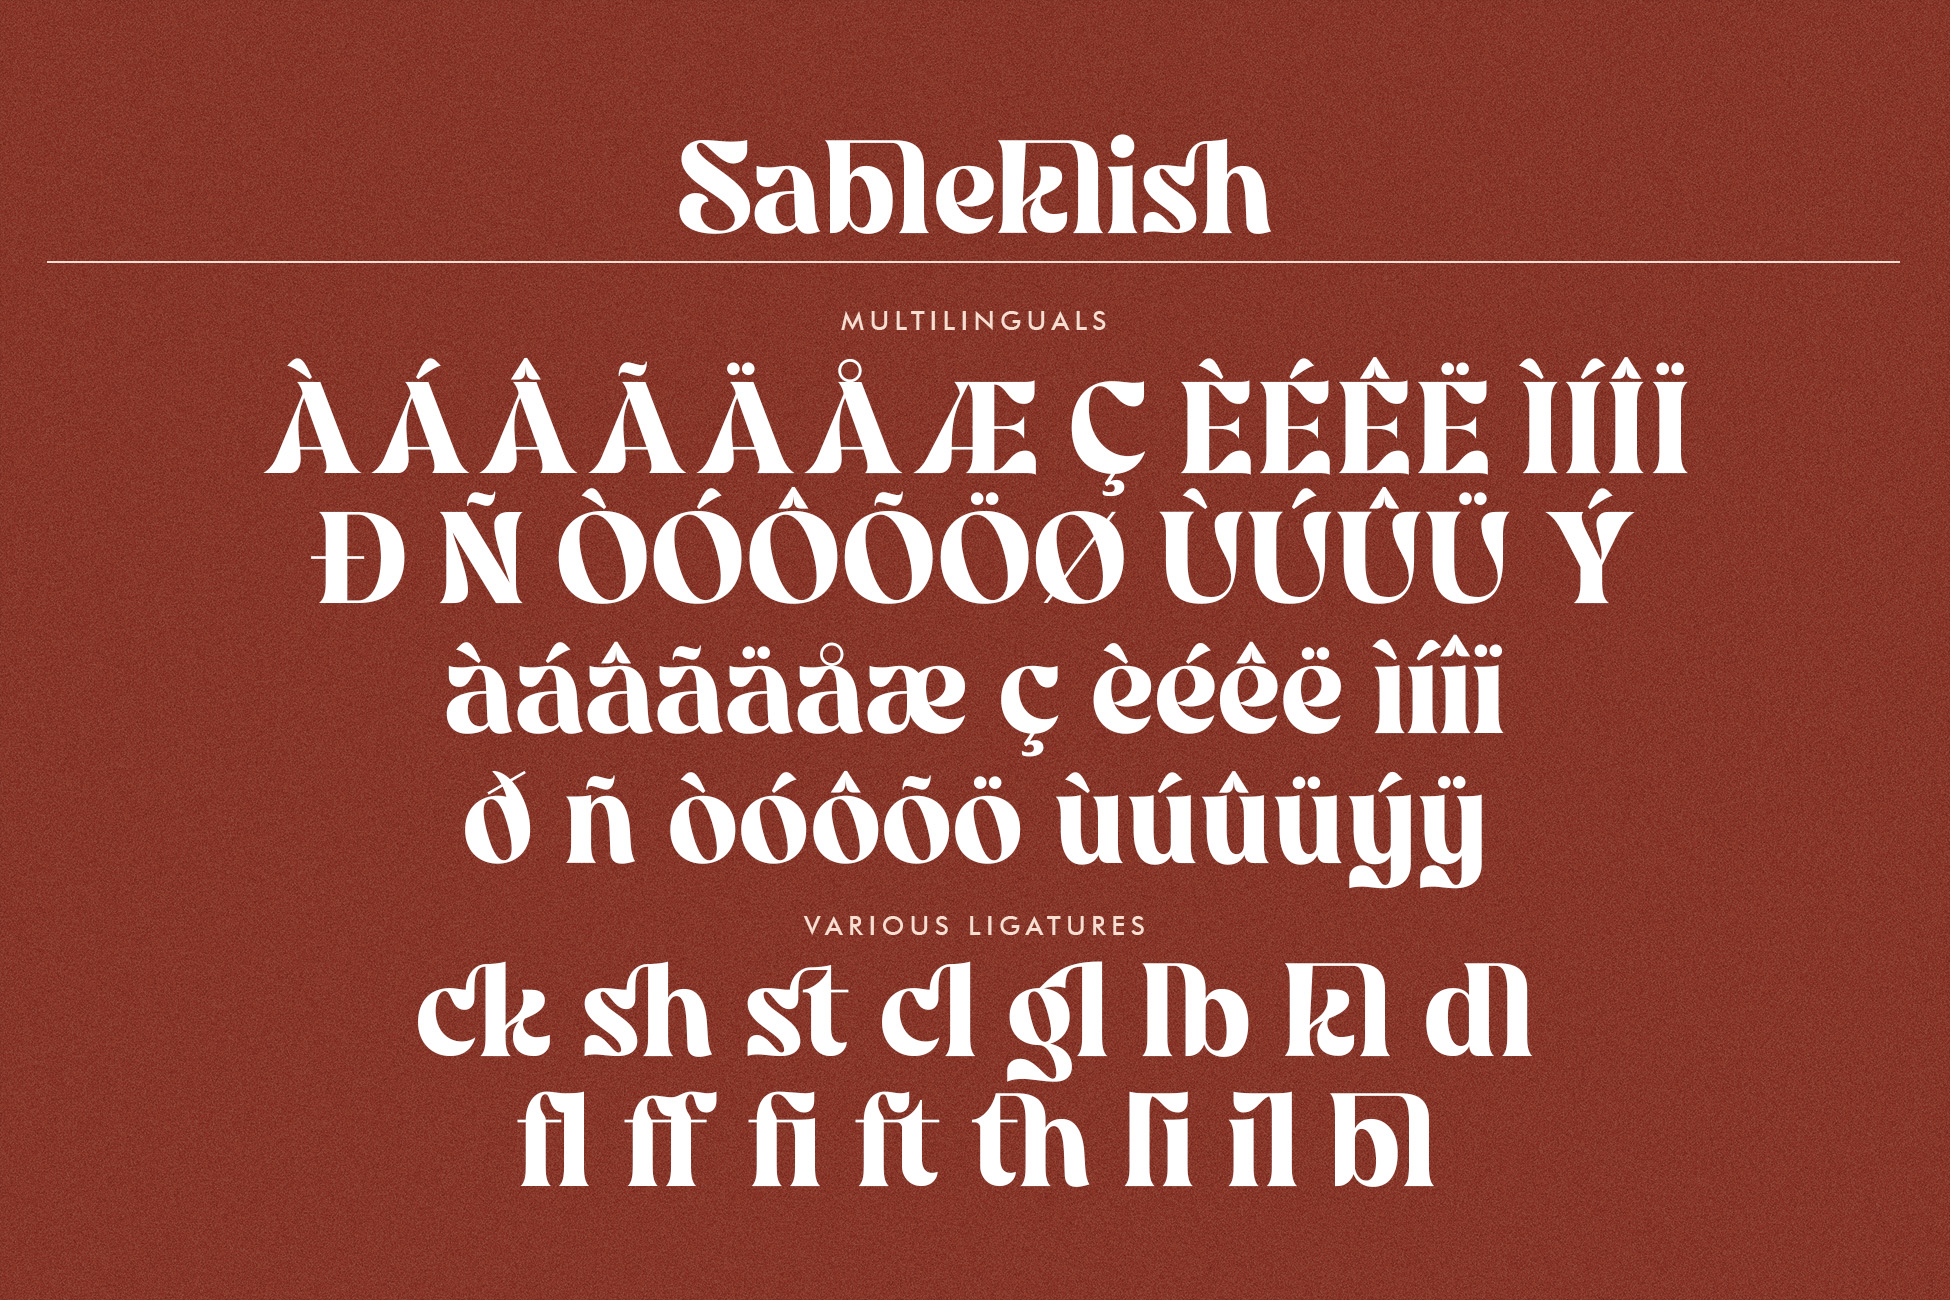 Sableklish